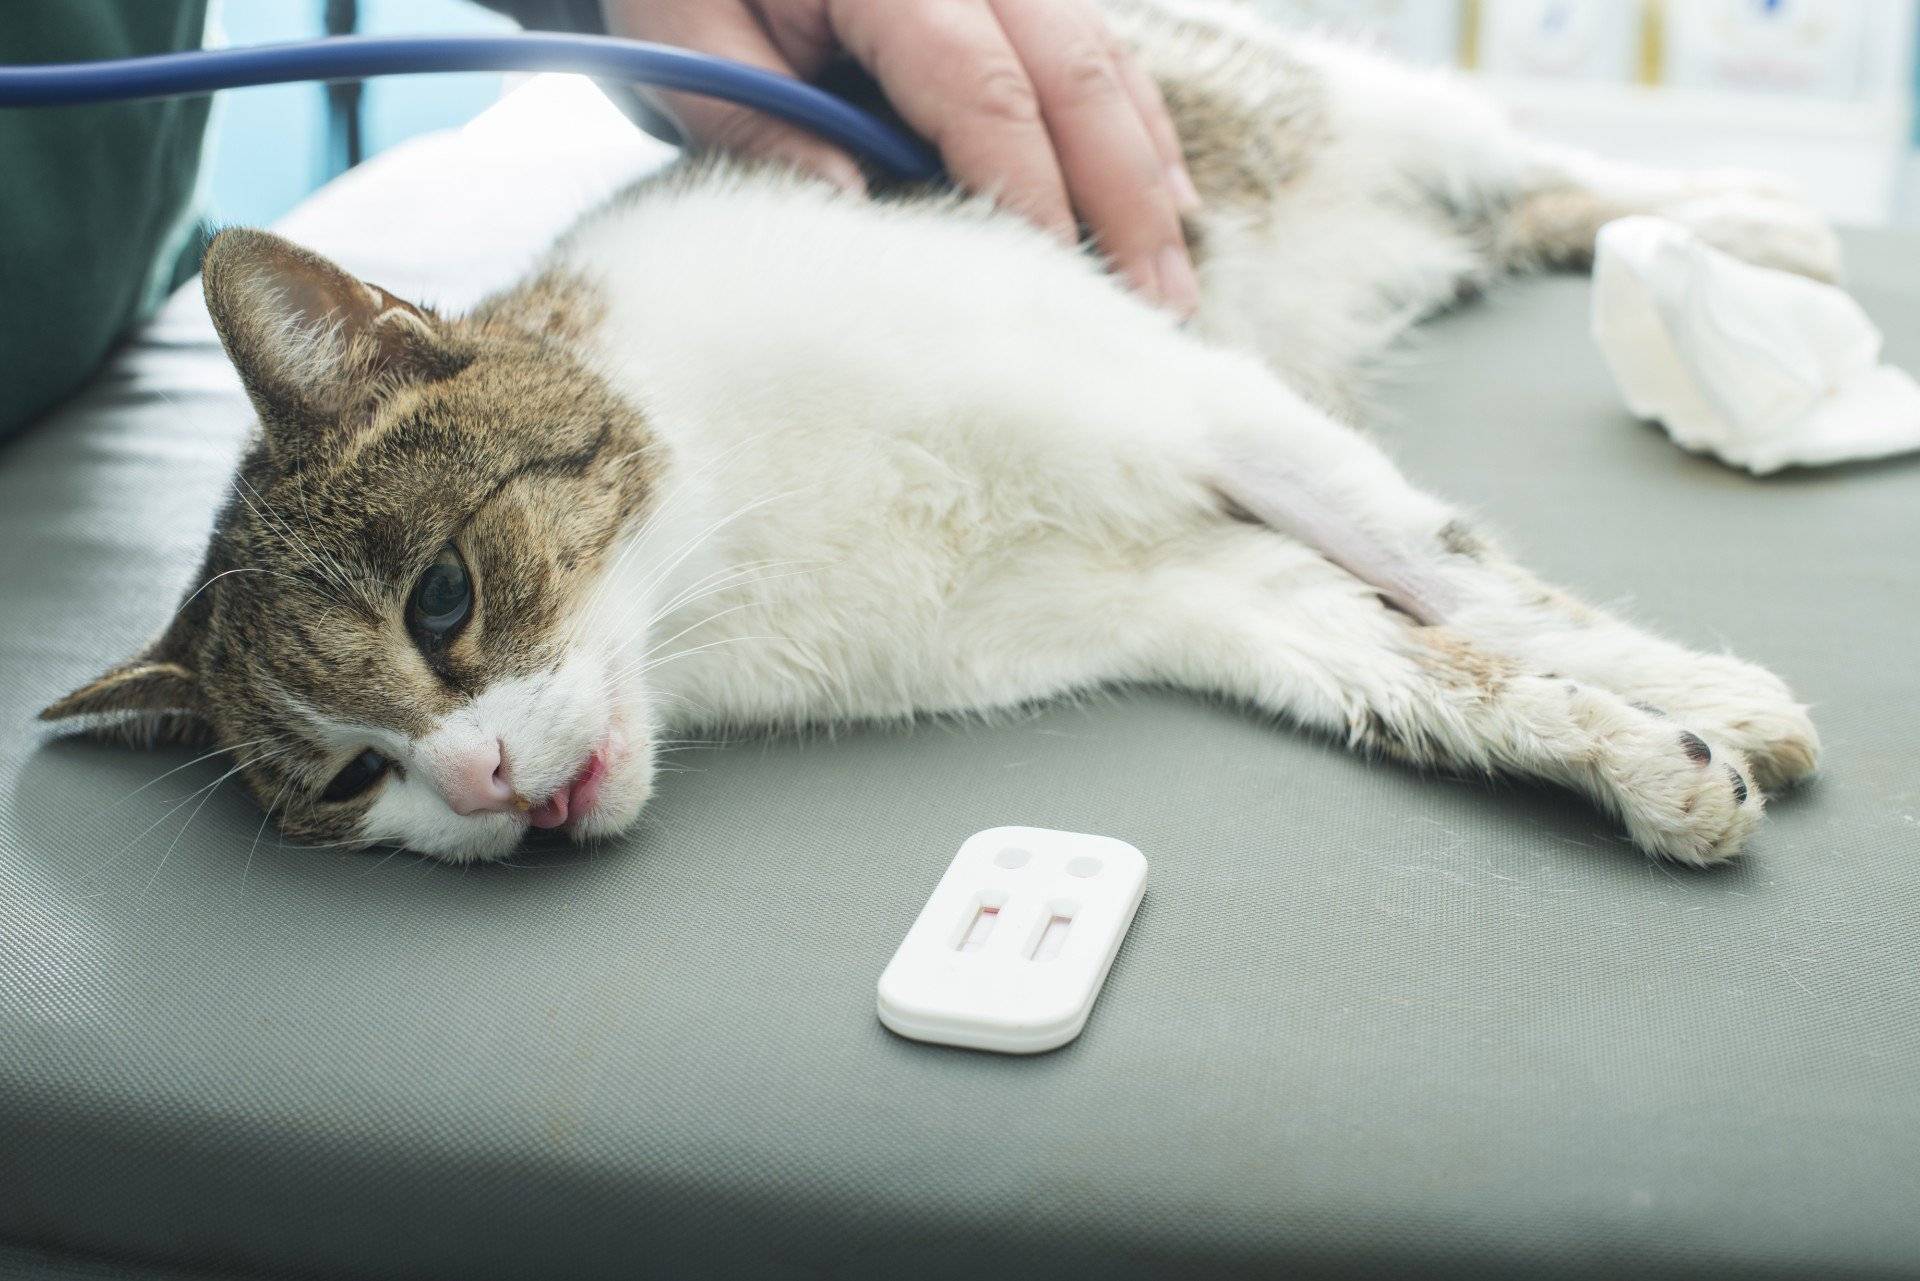 Инфекционные заболевания кошек симптомы и лечение, вирусная инфекция у кота